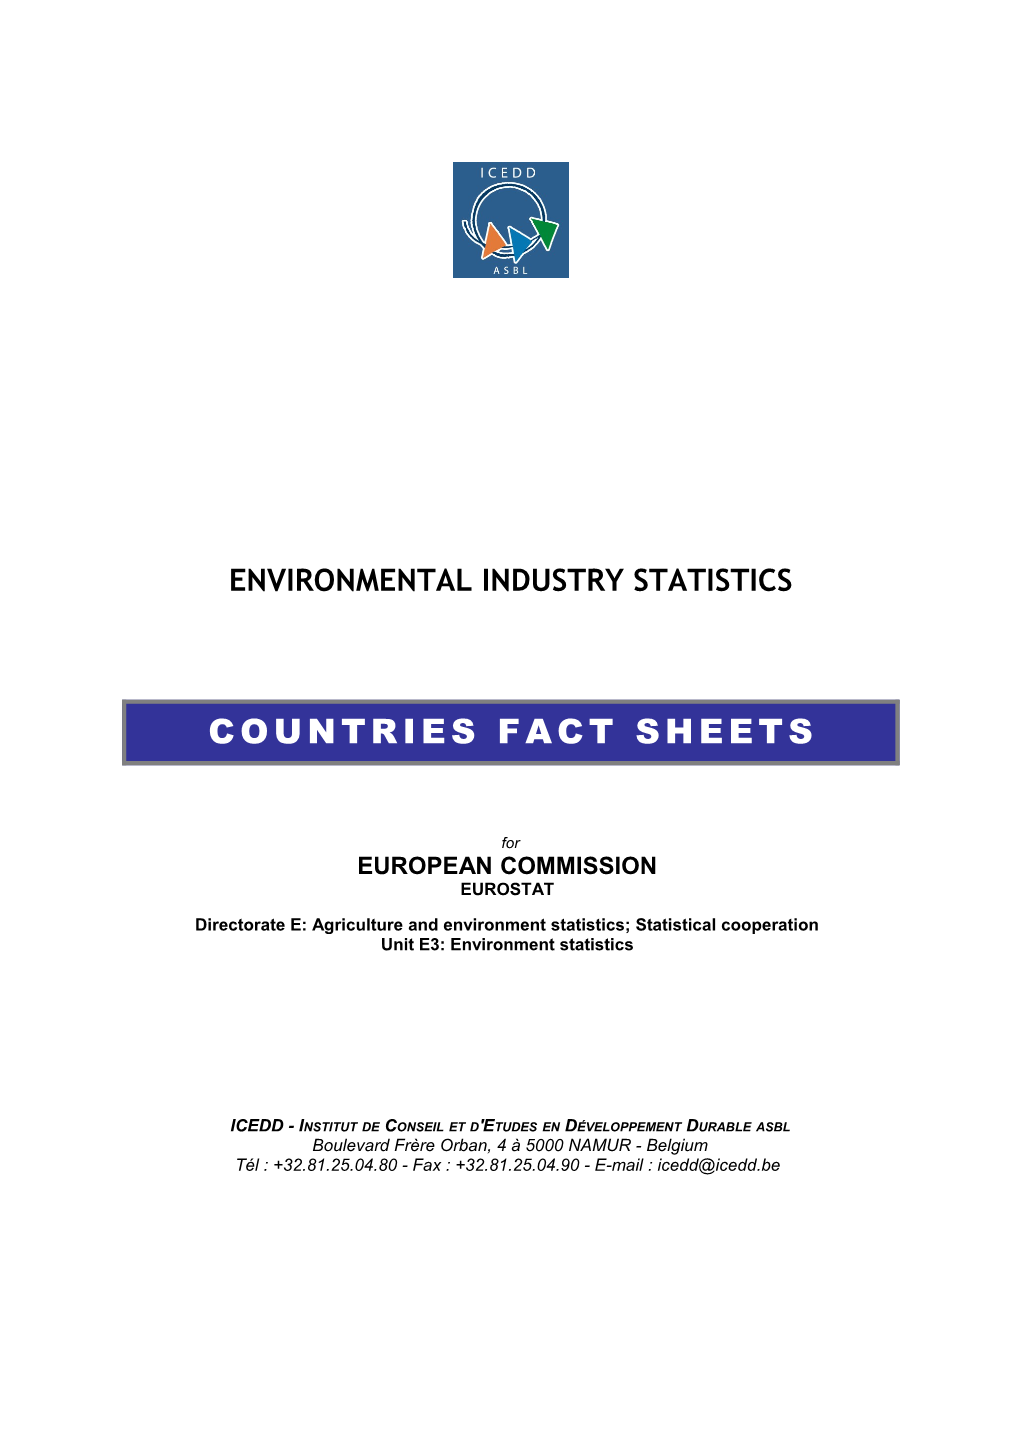 Environmental Industry Statistics